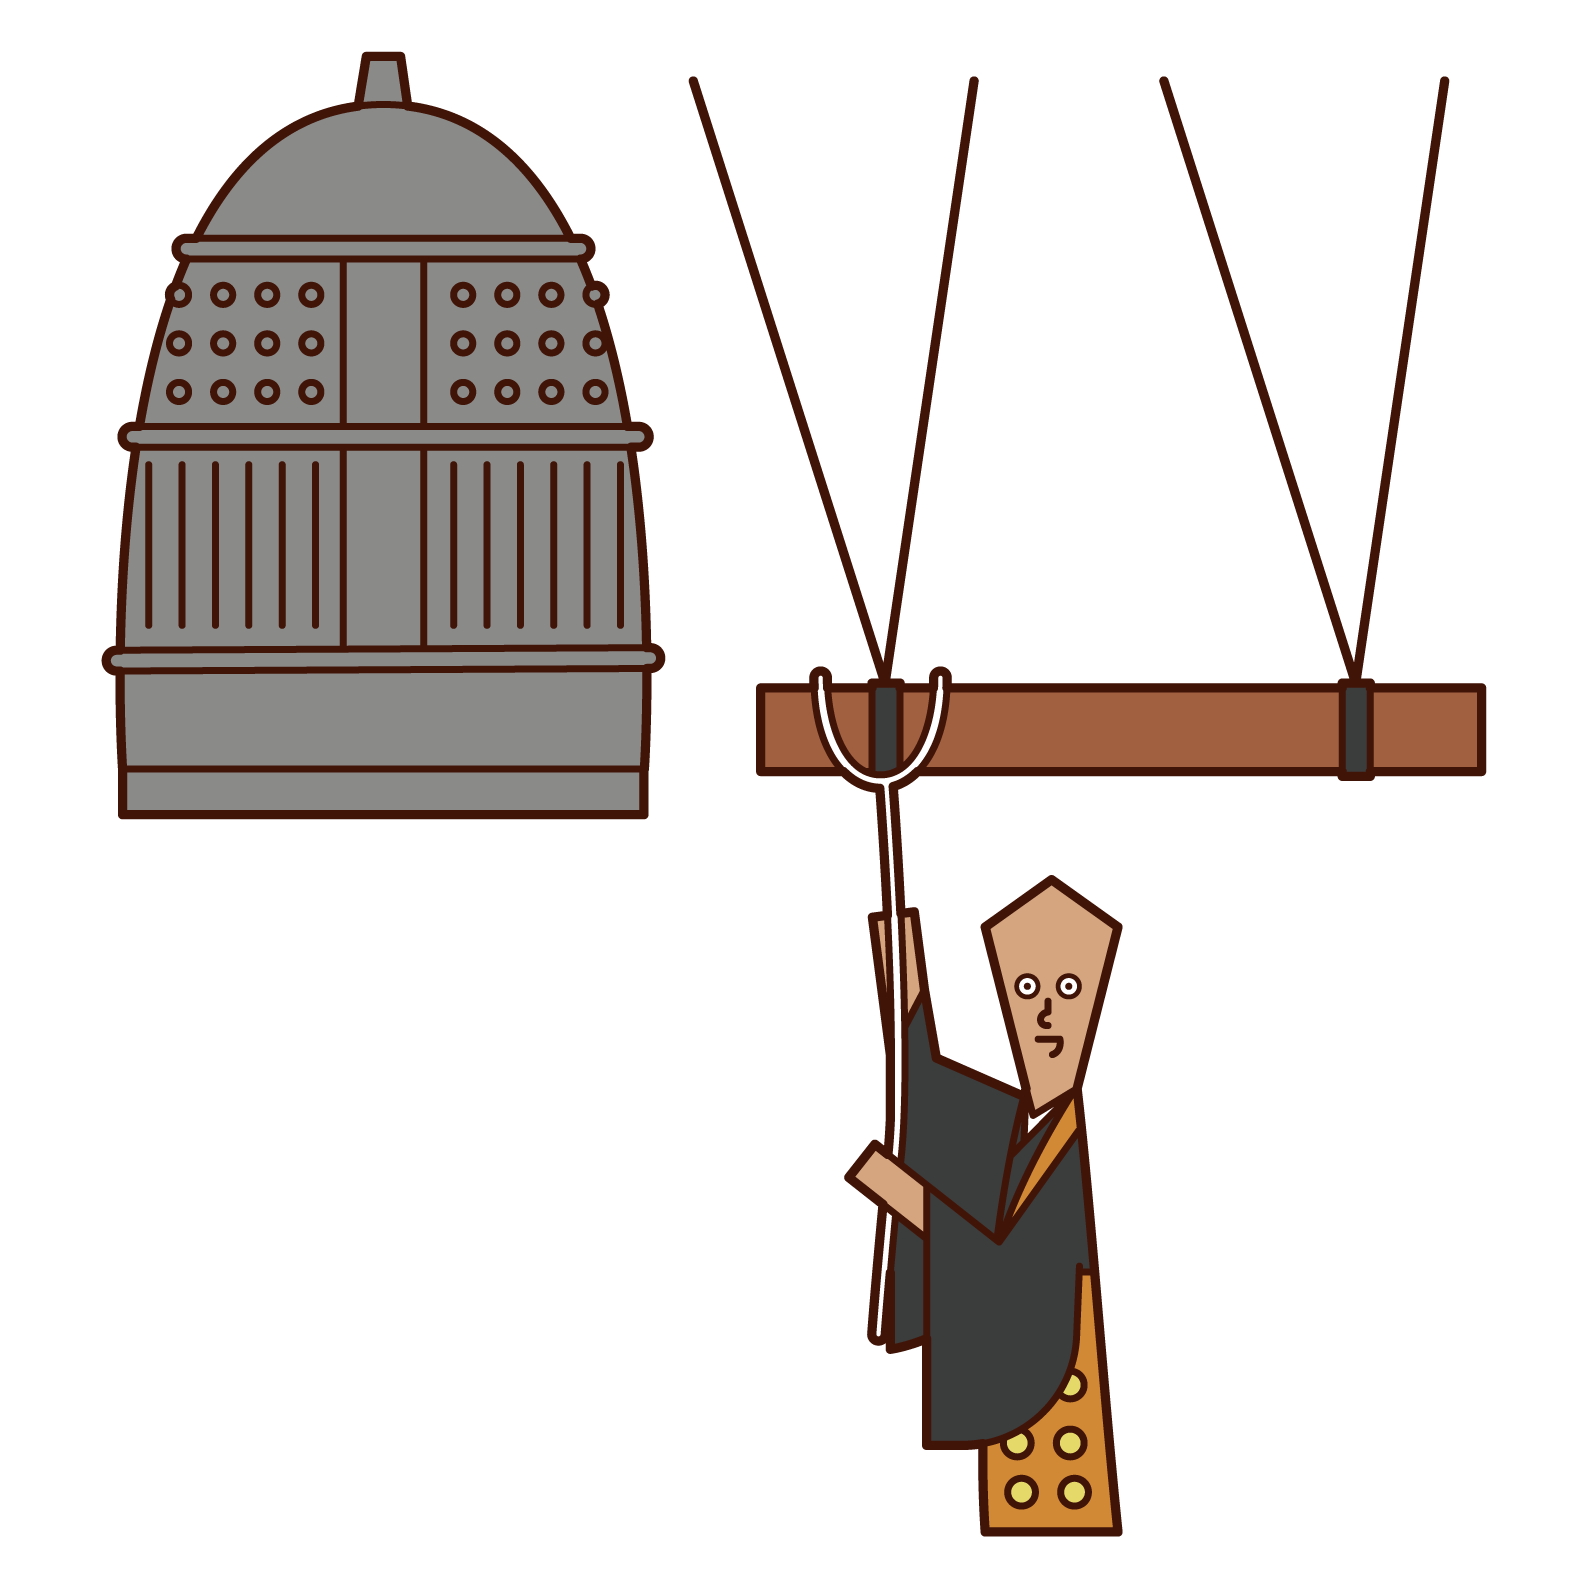 僧侶敲響寺廟鐘聲的插圖